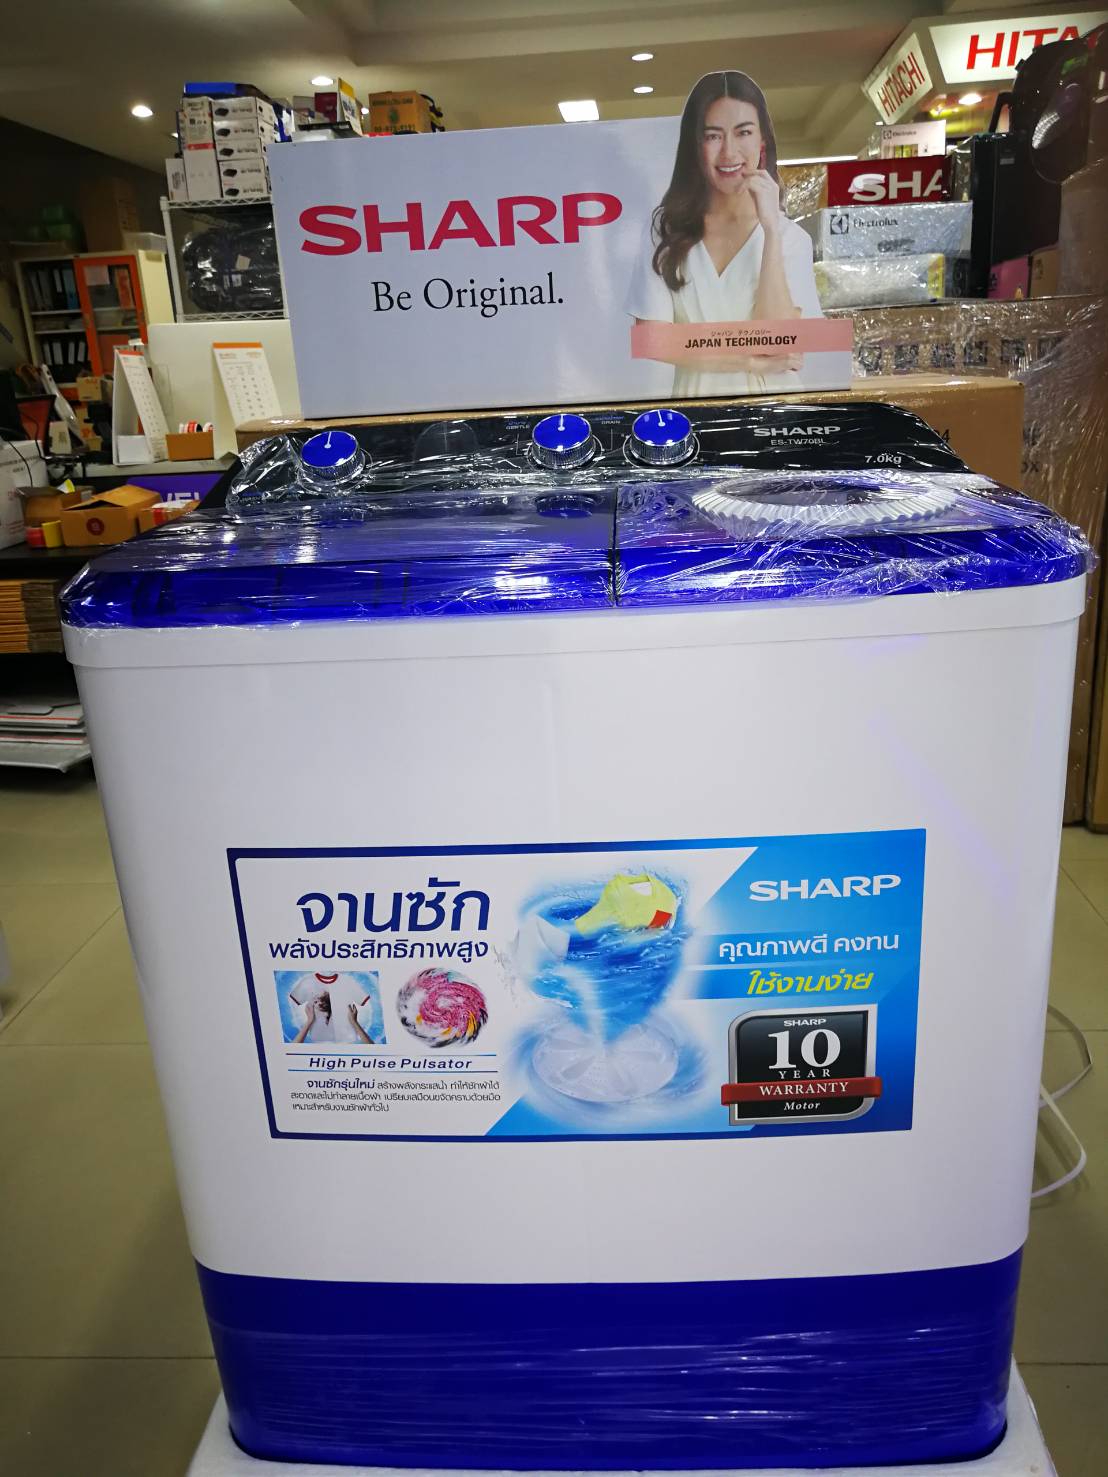 SHARP เครื่องซักผ้าฝาบนแบบ 2 ถัง 7.0 KG รุ่น ES-TW70T-BL รับประกันมอเตอร์ 10 ปี